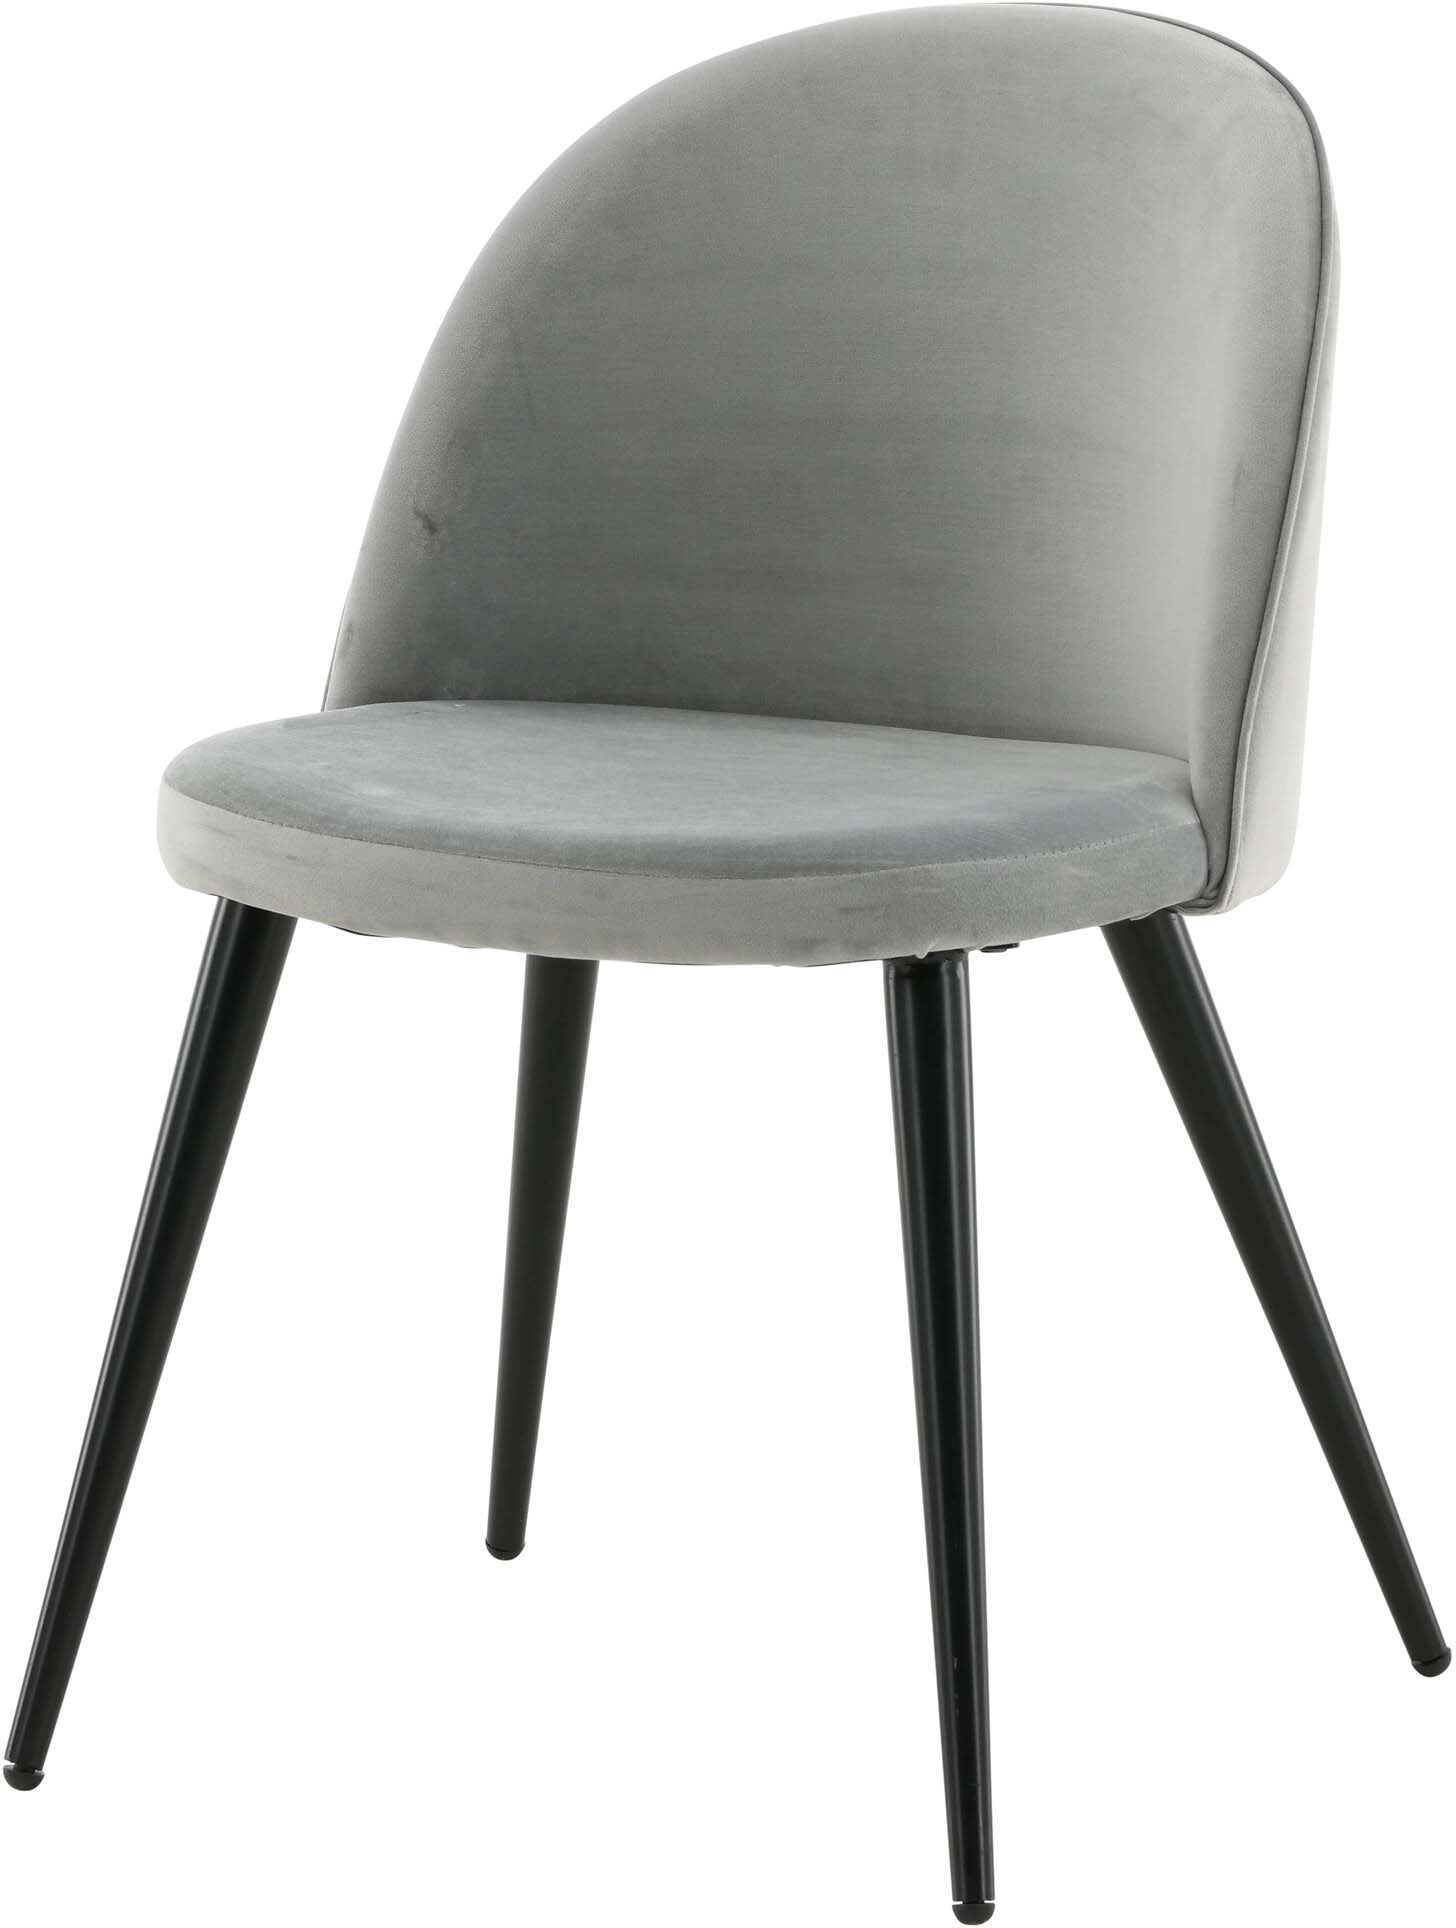 Velvet Matstol Stuhl in Grau / Schwarz präsentiert im Onlineshop von KAQTU Design AG. Schalenstuhl ist von Venture Home